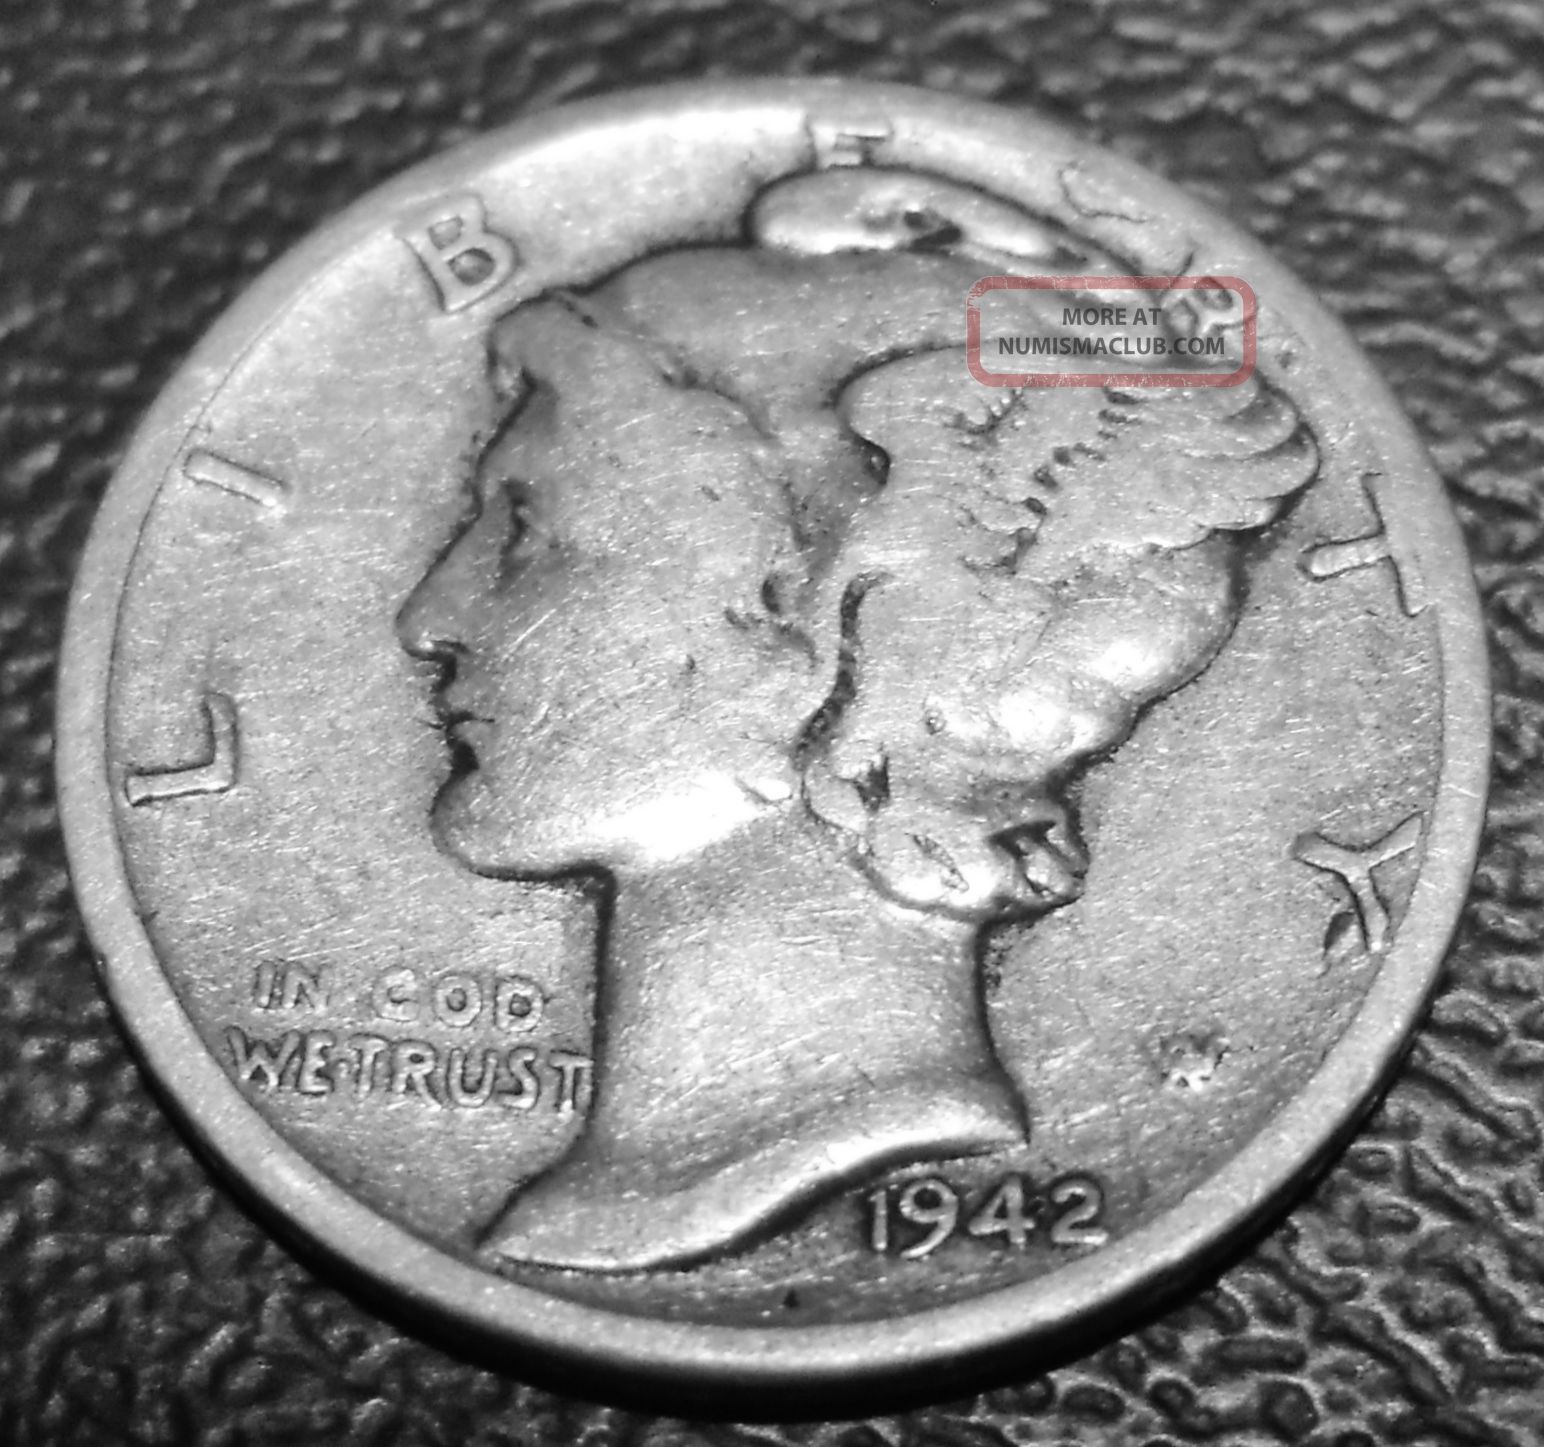 1942 dime mercury value